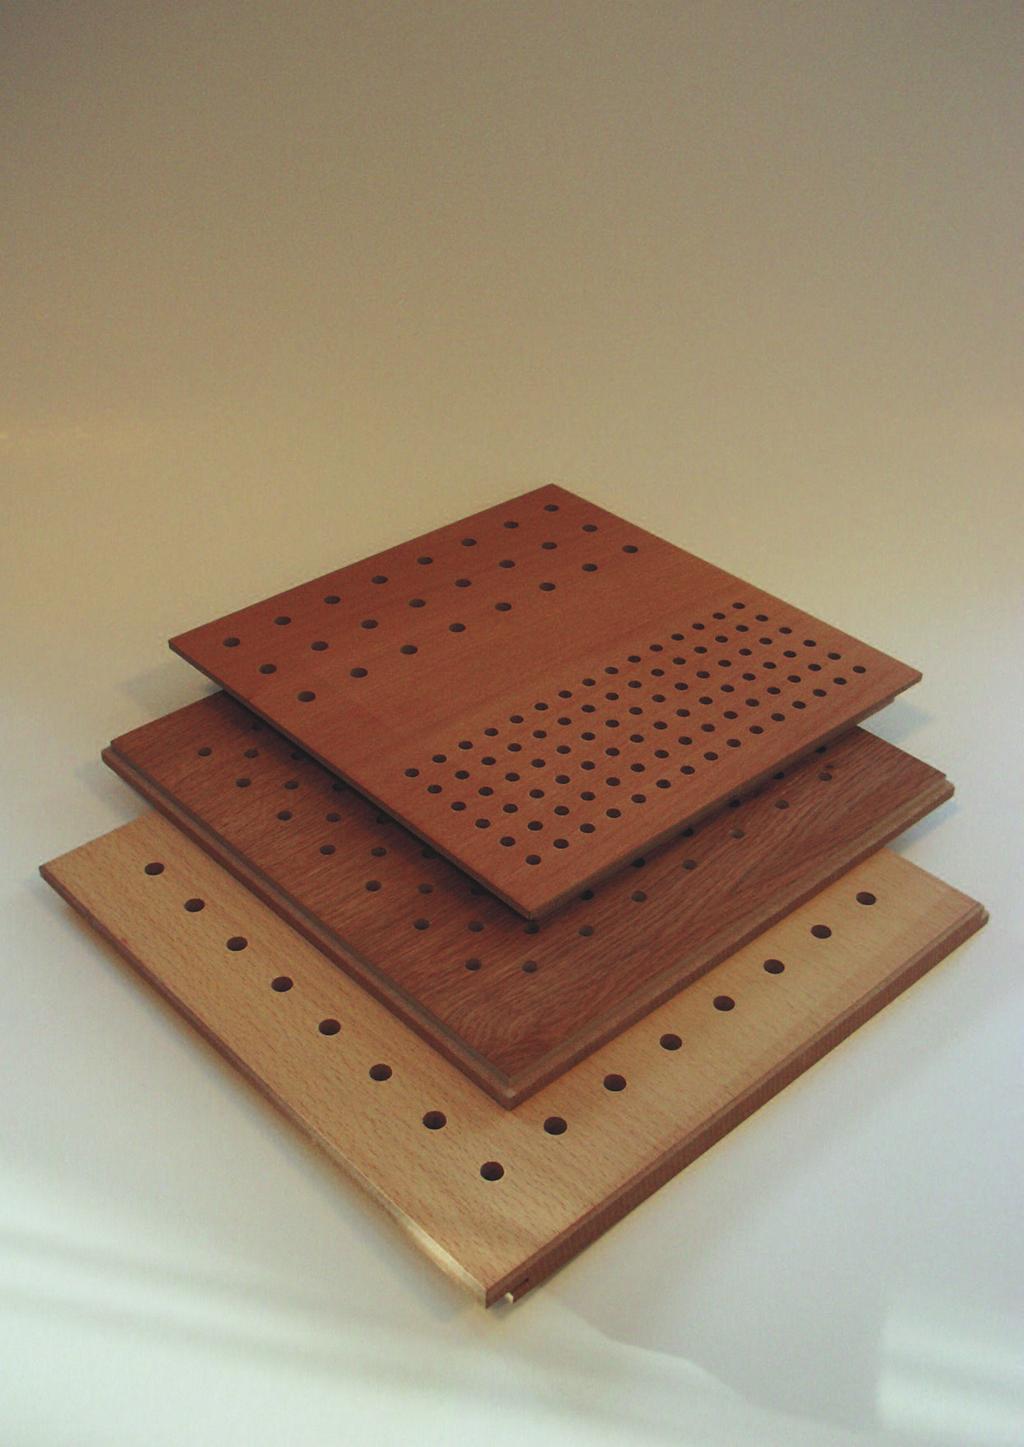 De tegels zijn afgewerkt met houtfineer en hebben een natuurlijke houtlook.